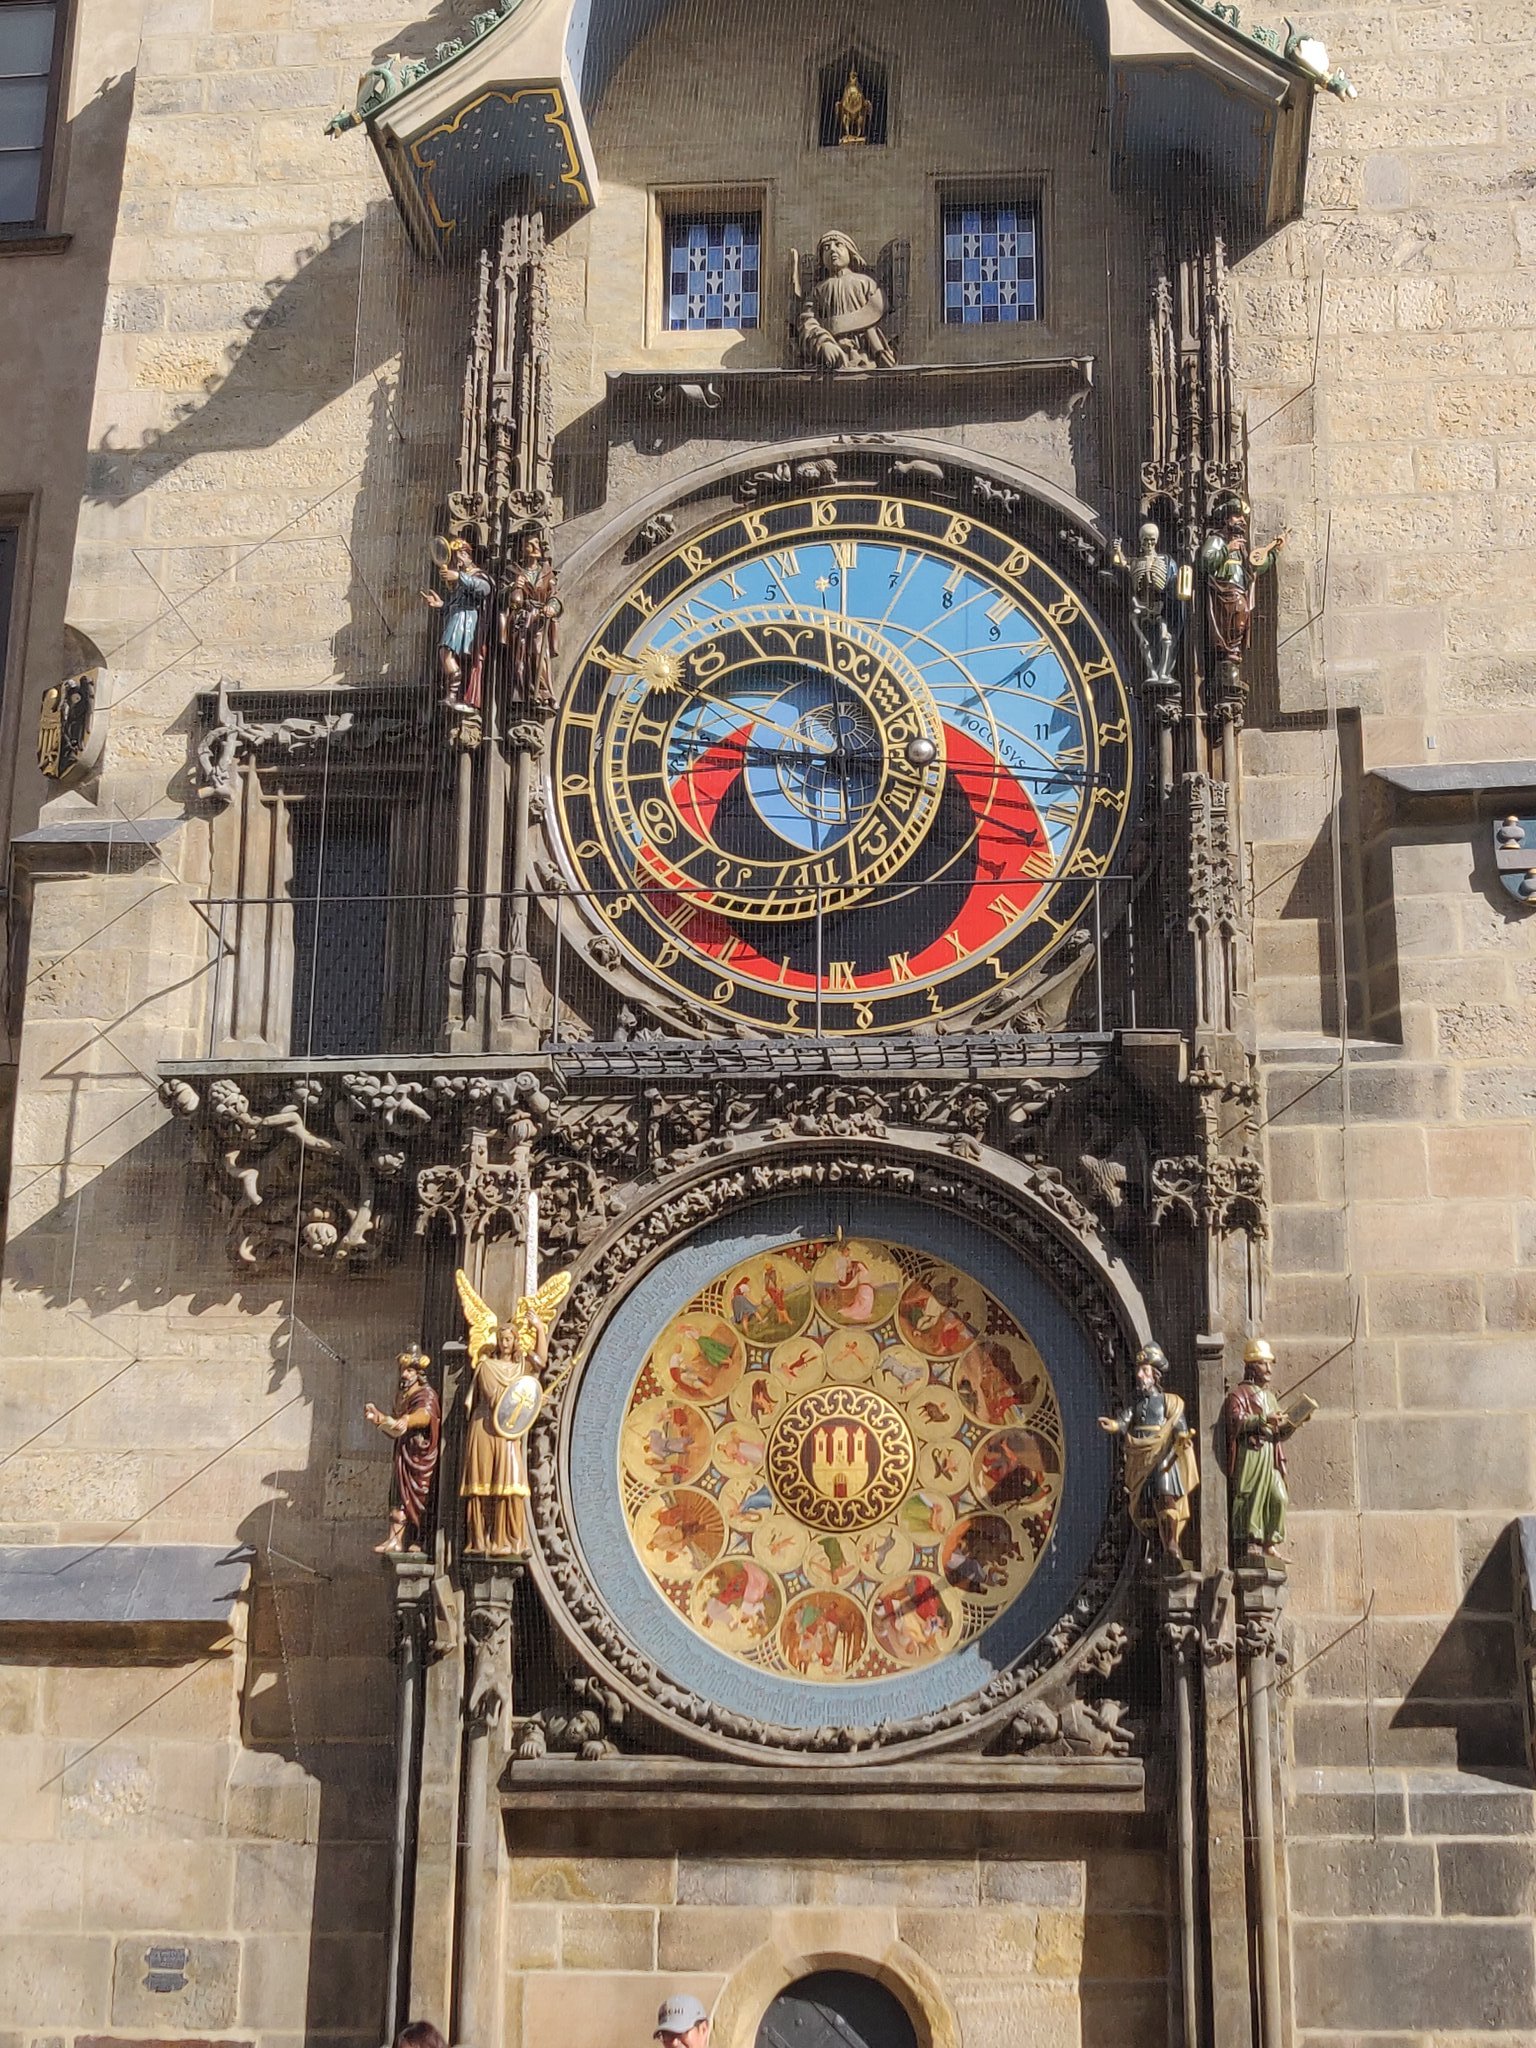 Une horloge astronomique du 15e siècle. Elle est chargée de nombreux cadrans noirs à chiffres dorés, indiquant la position du soleil et de certains astres. Le fond principal est bleu et rouge.